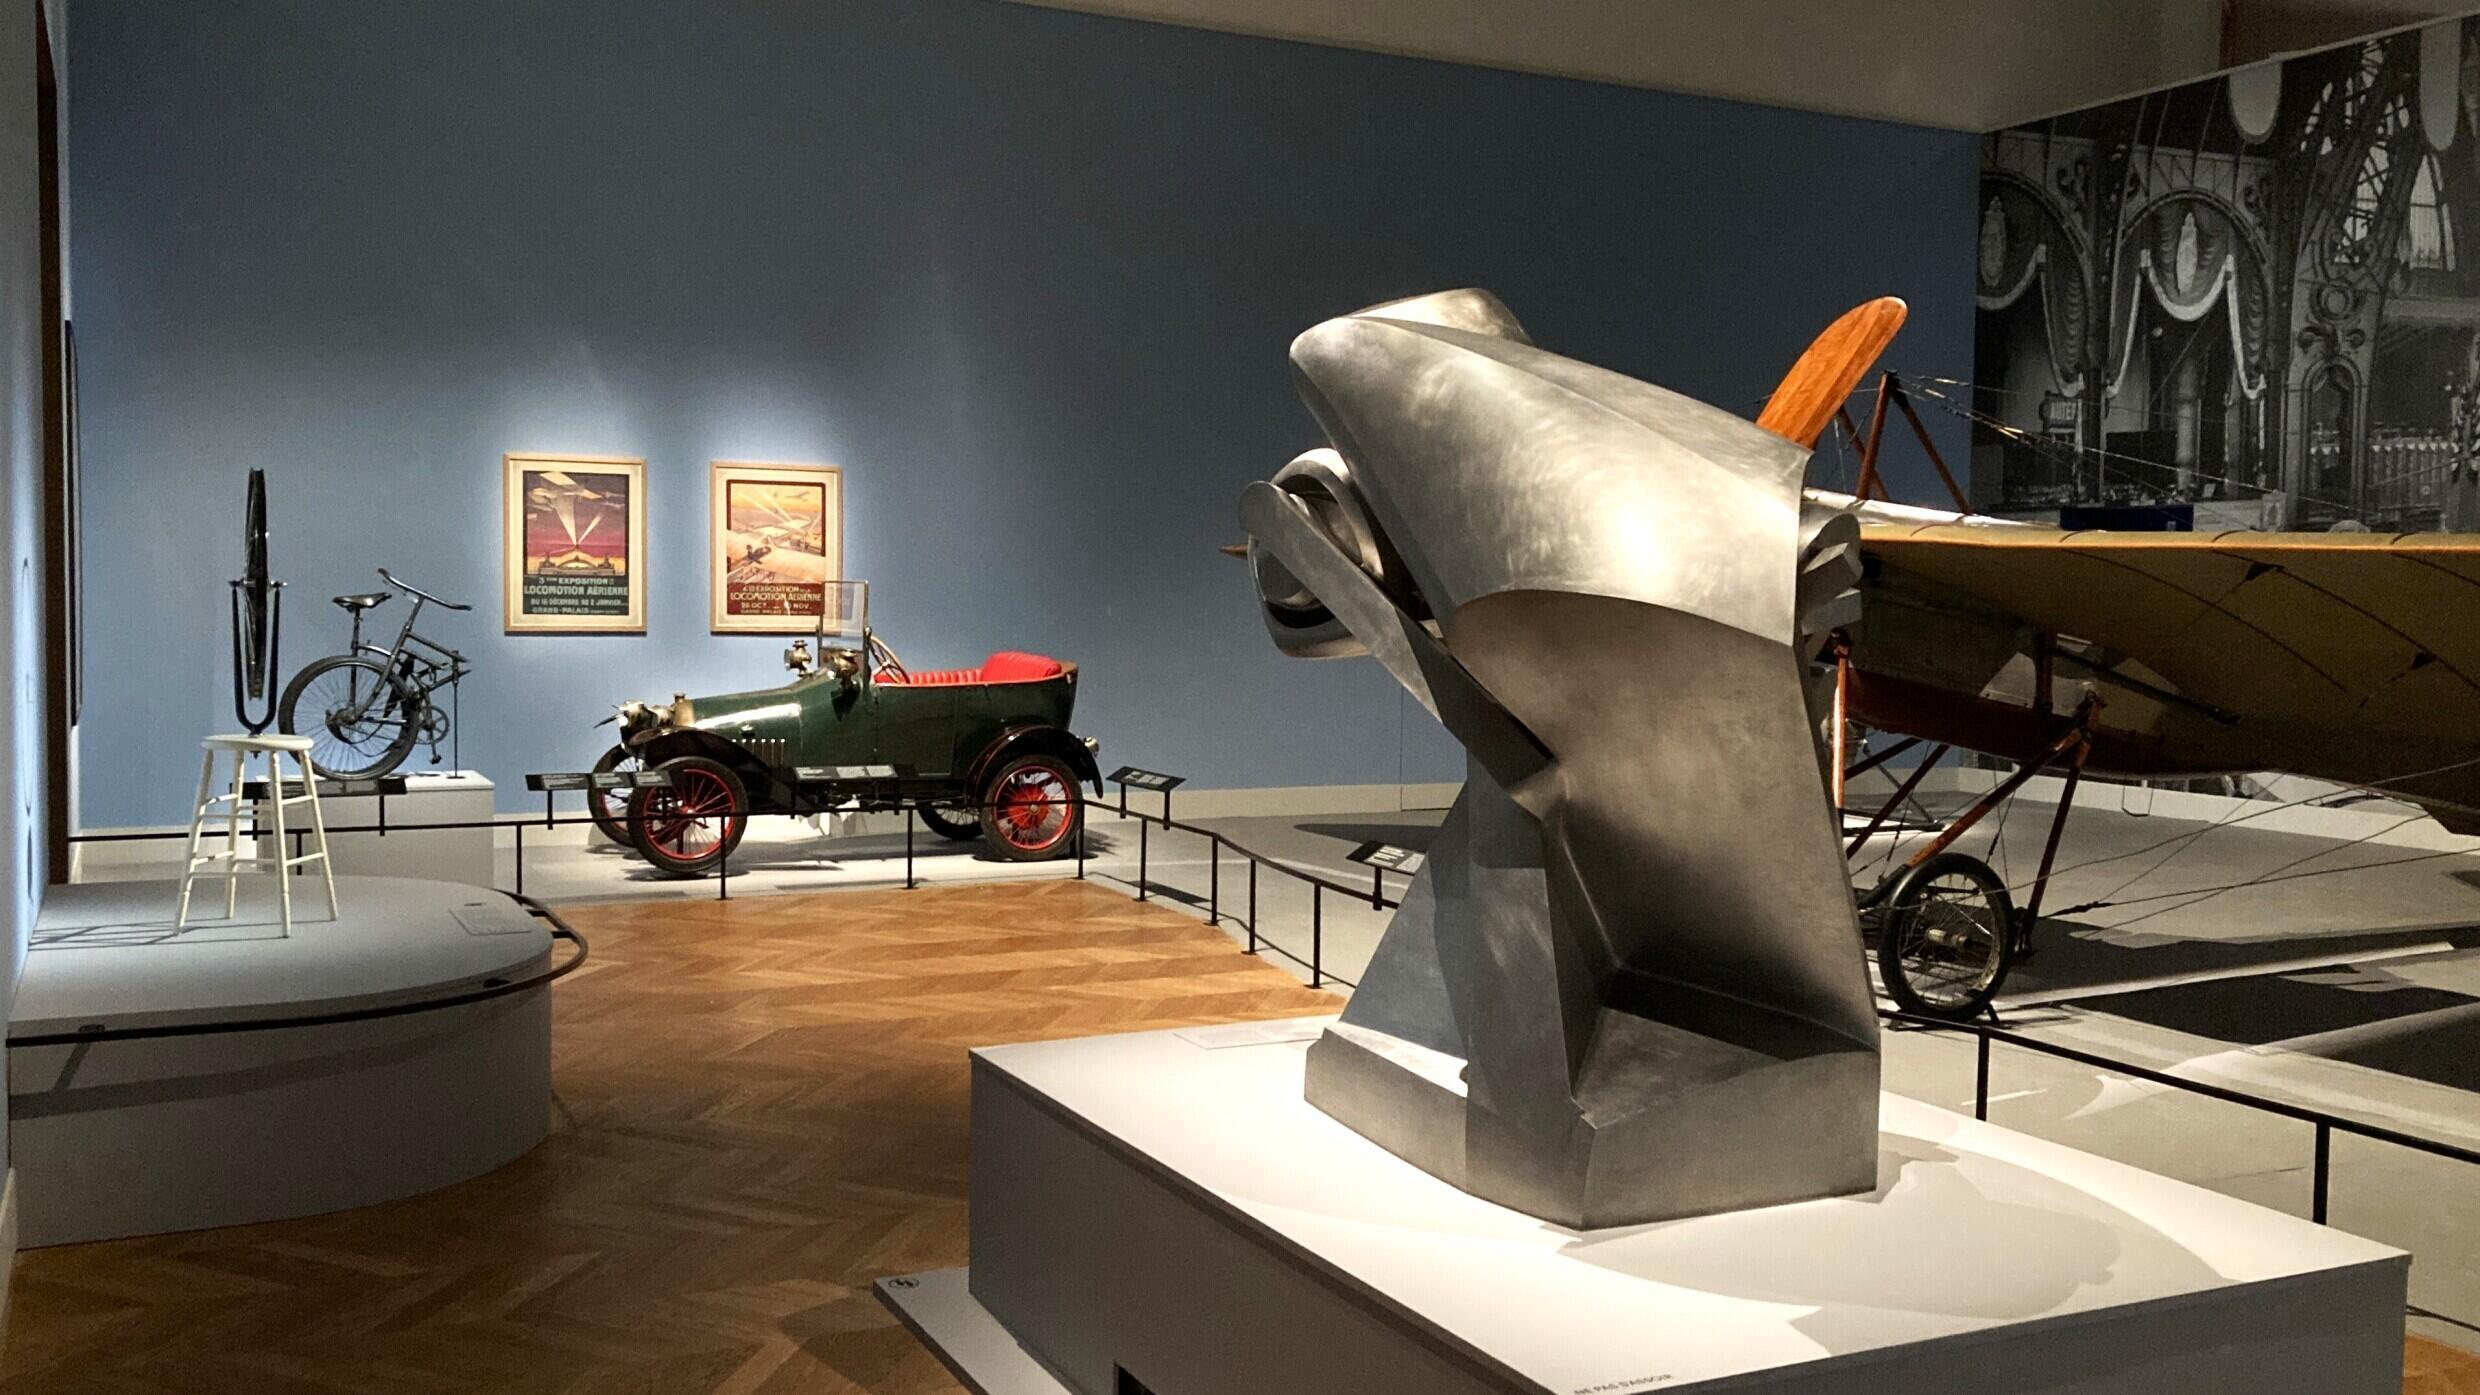 L’aéroplane d’Alain Deperdussin de 1911 en face d’une roue de bicyclette de 1913 de Marcel Duchamp dans l’exposition « Le Paris de la modernité » au Petit Palais.